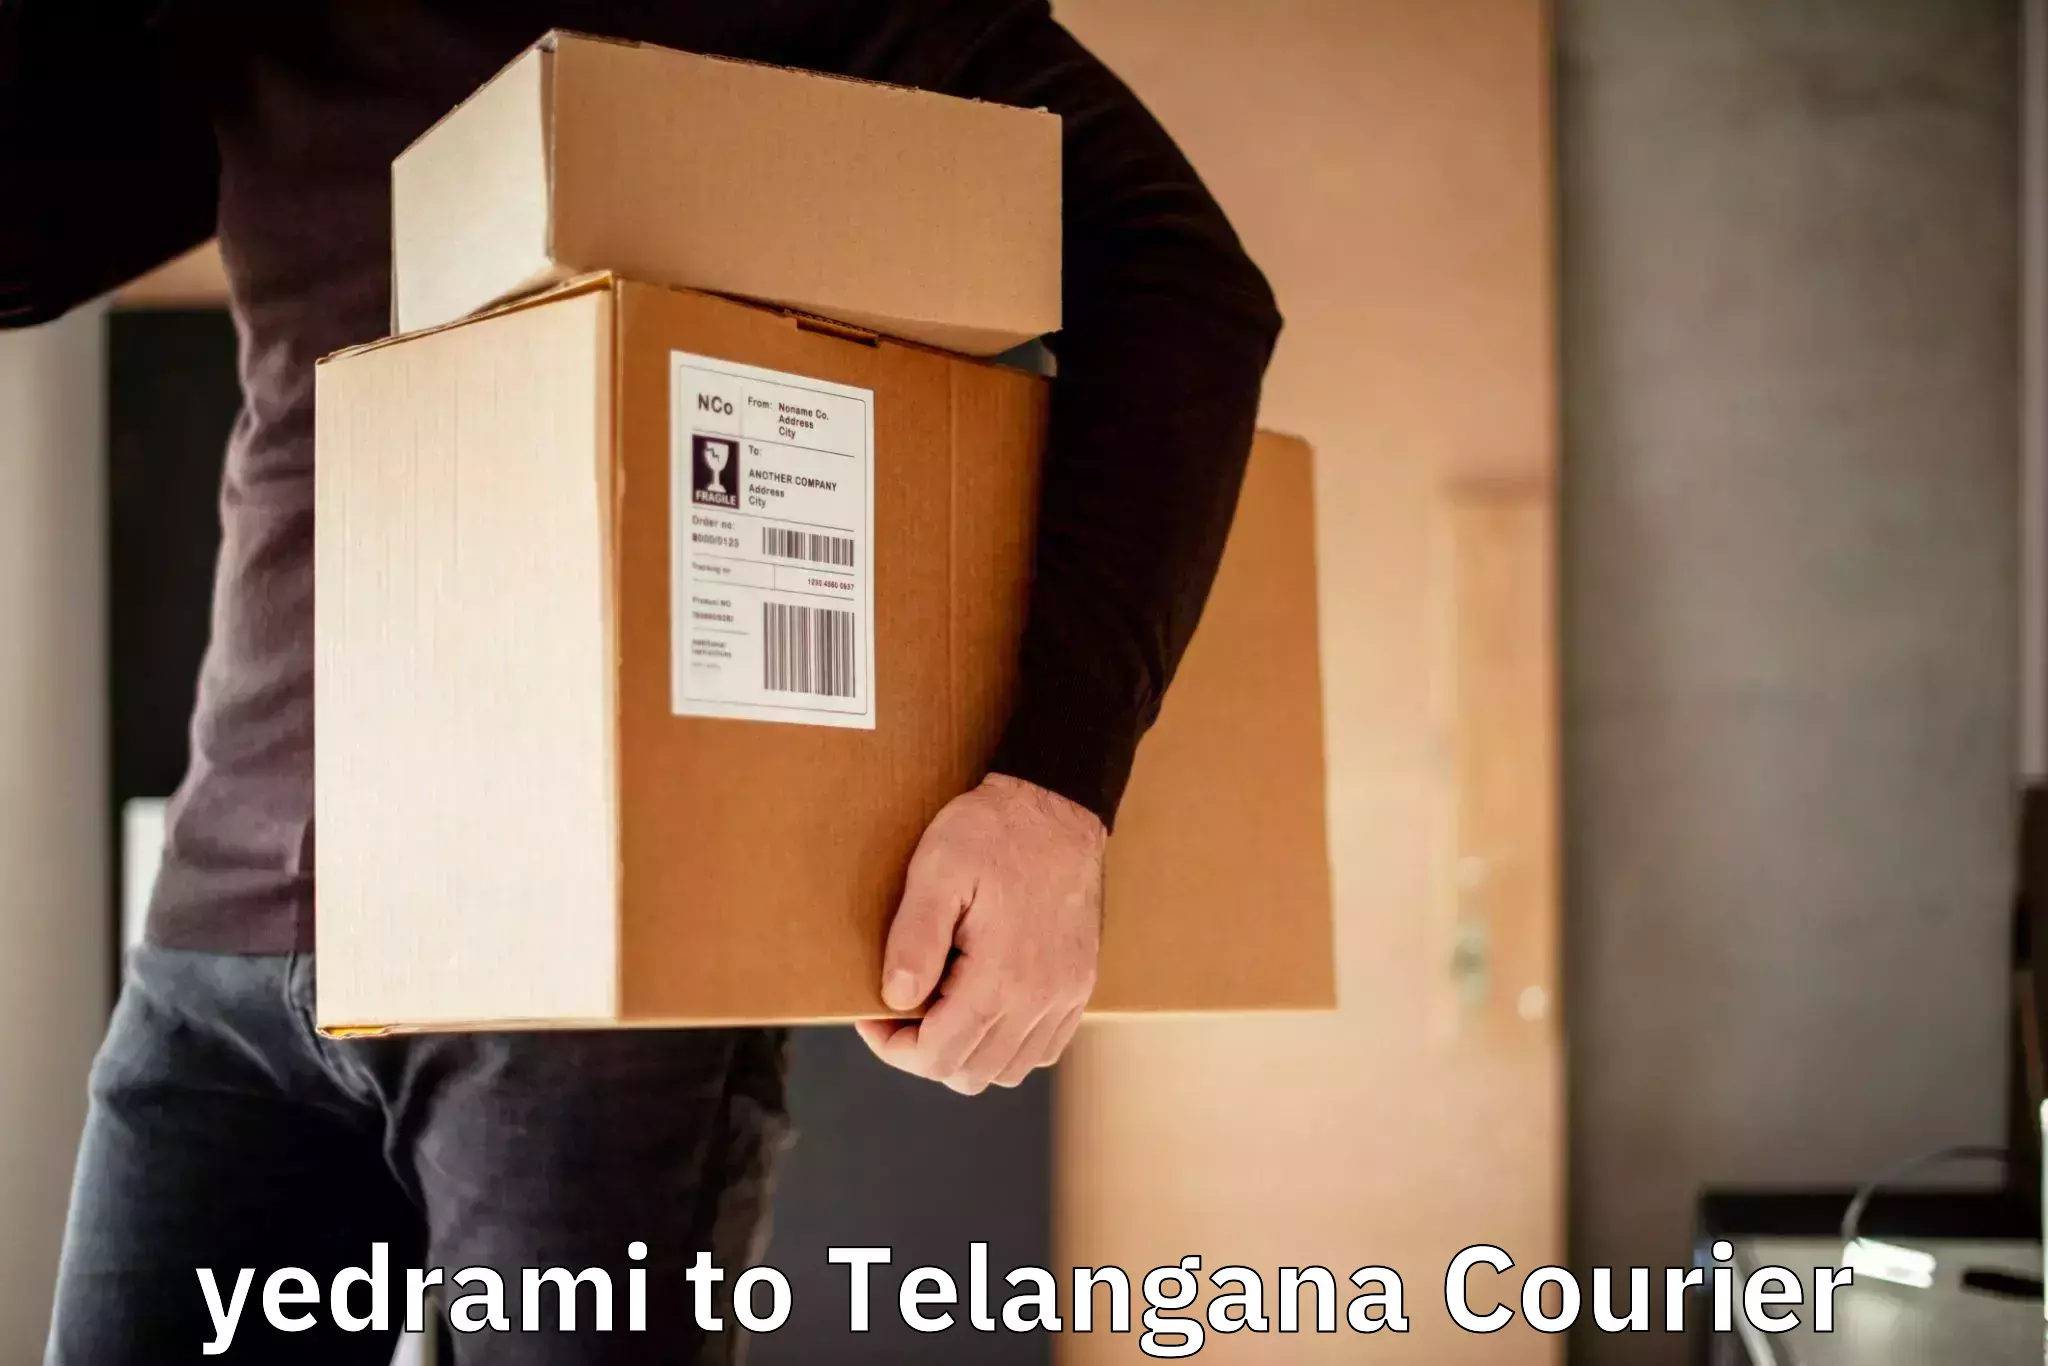 Efficient parcel service yedrami to Adilabad